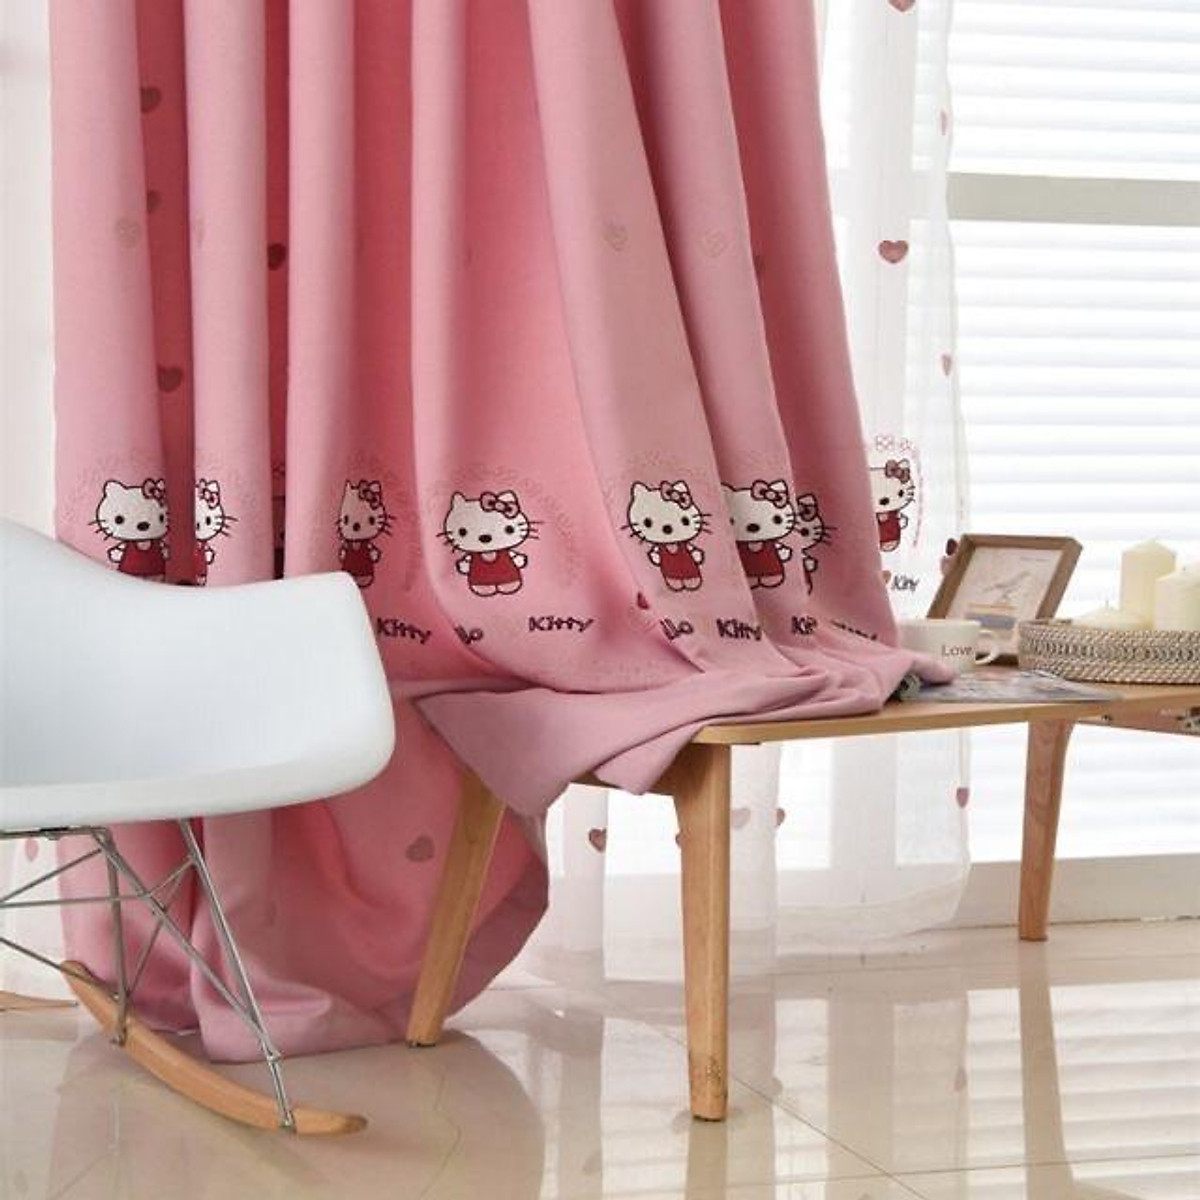 Rèm Thêu Kitty xinh xắn, rèm cửa màu hồng trang trí phòng ngủ trẻ em - Cao cố định 2.0m